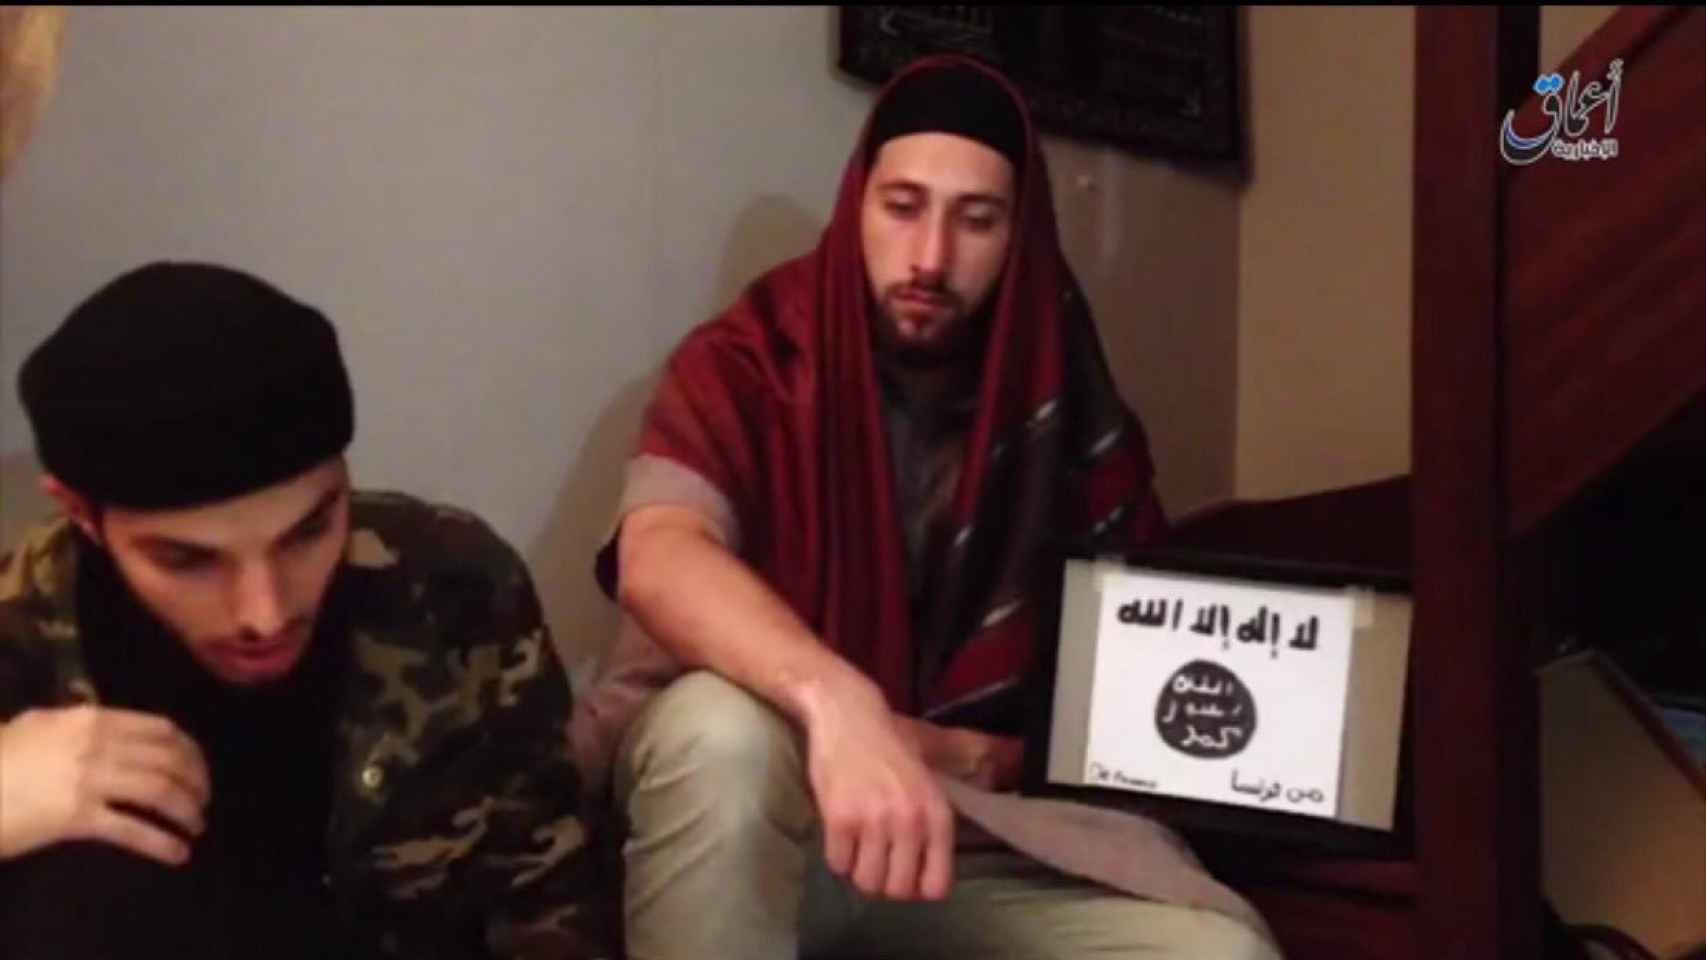 El grupo terrorista Estado Islámico asegura que estos son los dos hombres que atentaron en una iglesia de Normandía.